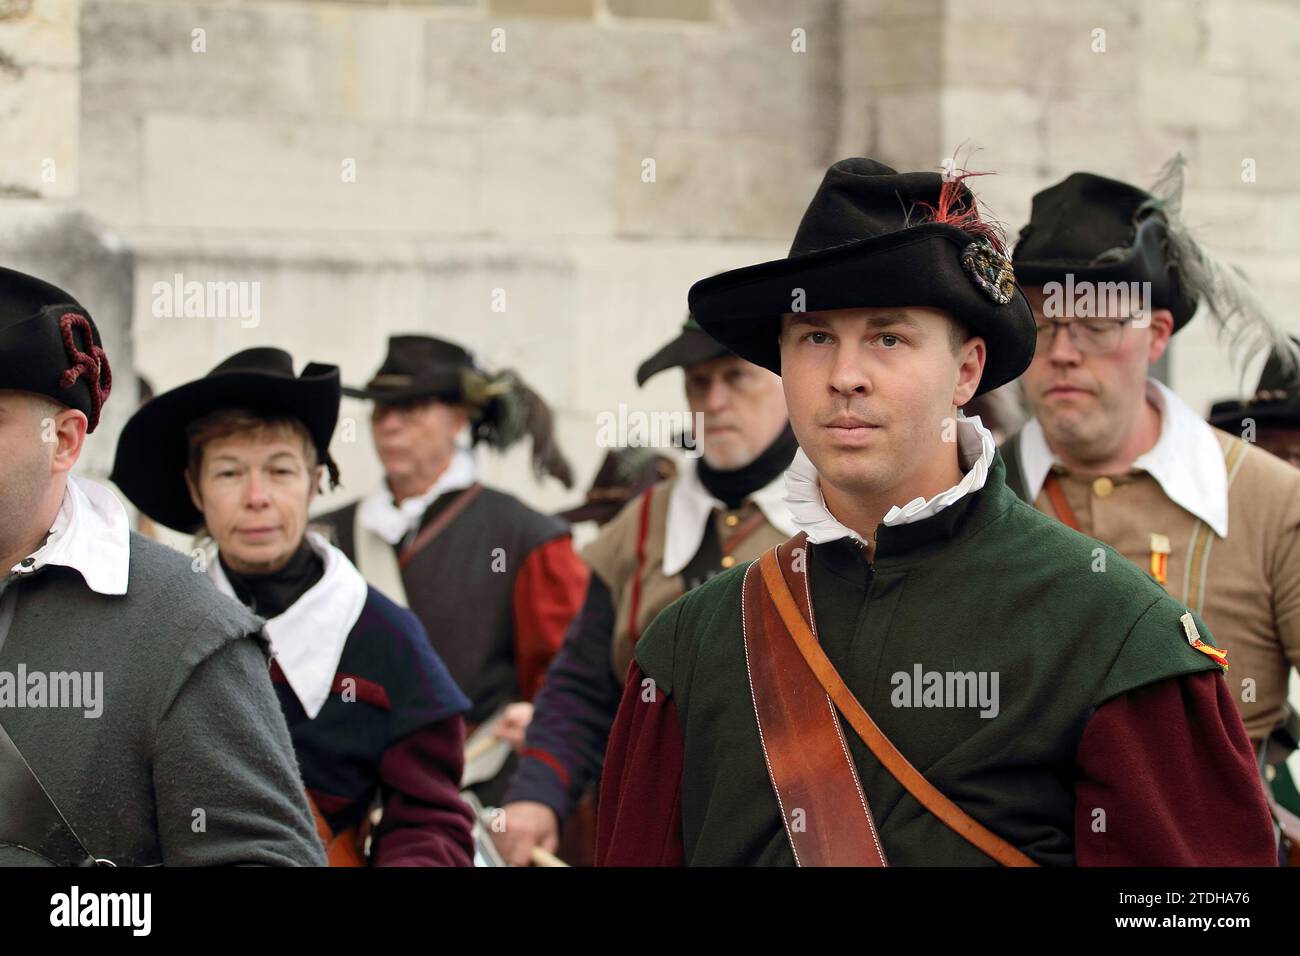 GENÈVE ; SUISSE-décembre 10 : un groupe de participants à la procession costumée en costumes médiévaux authentiques. Défilé du festival escalade le 10 décembre 20 Banque D'Images